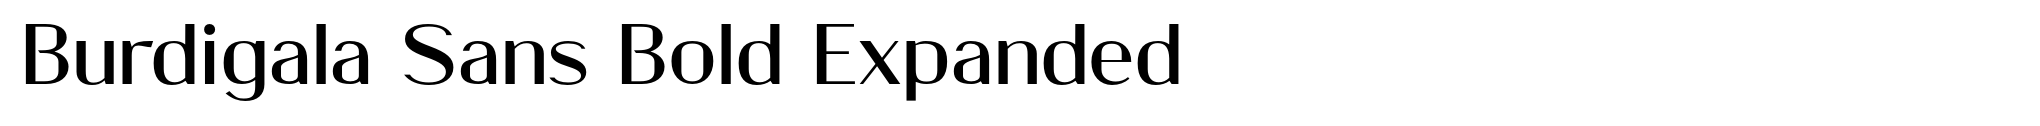 Burdigala Sans Bold Expanded image